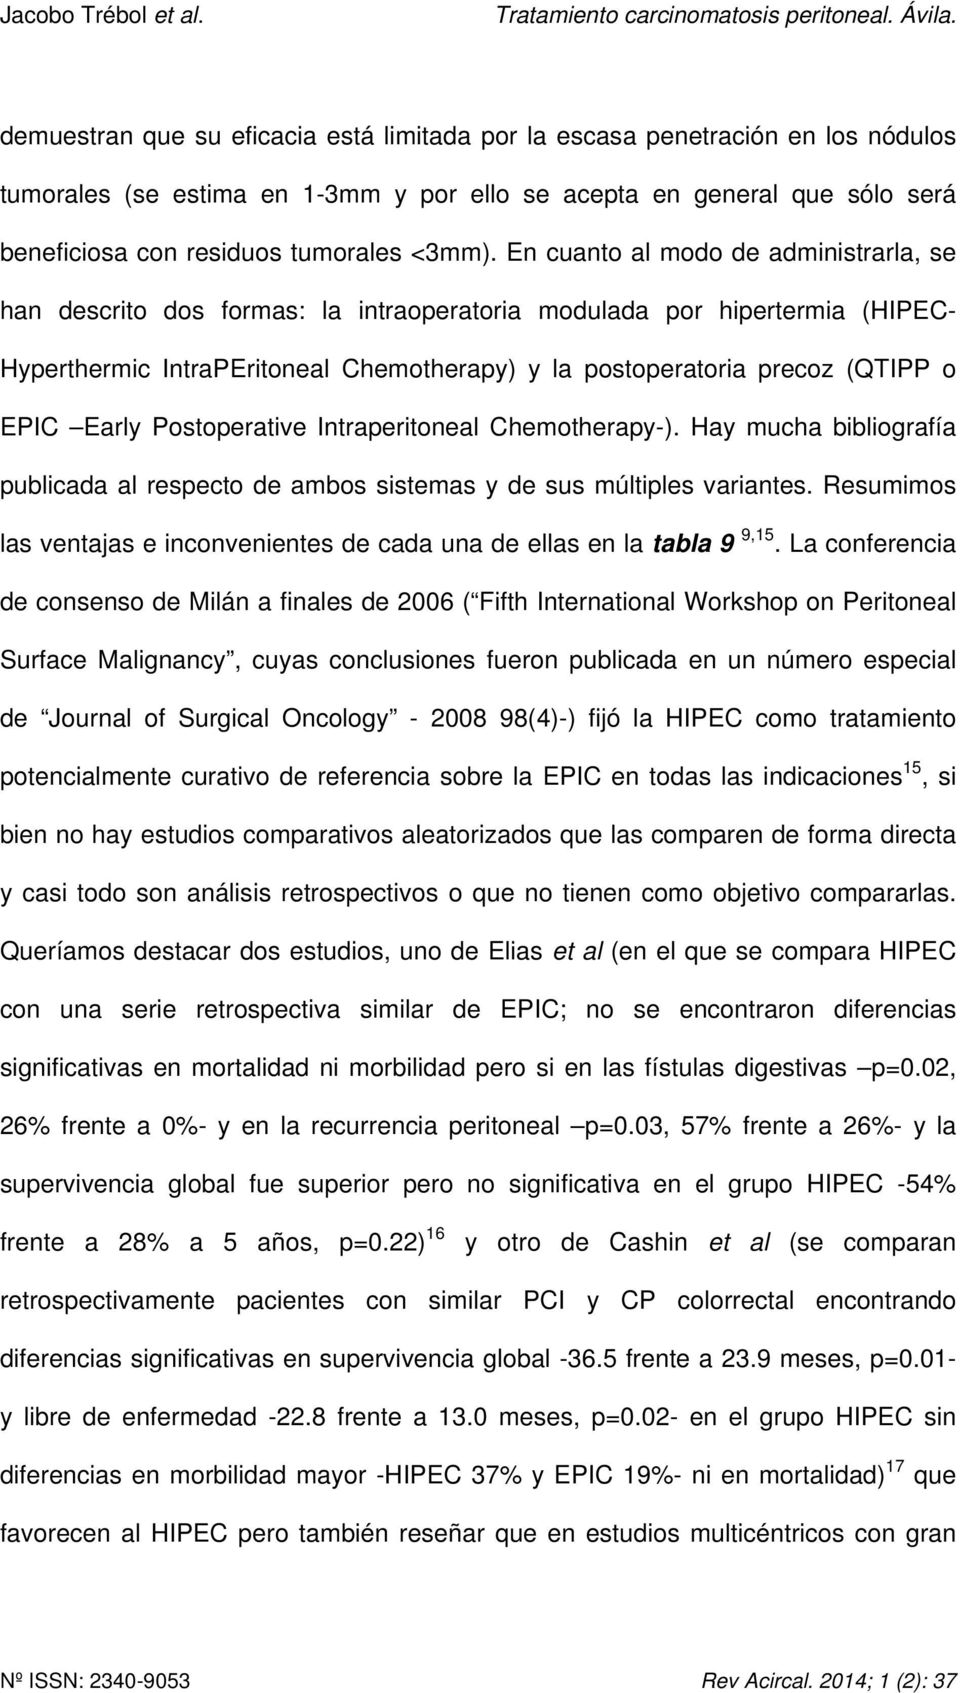 Early Postoperative Intraperitoneal Chemotherapy-). Hay mucha bibliografía publicada al respecto de ambos sistemas y de sus múltiples variantes.